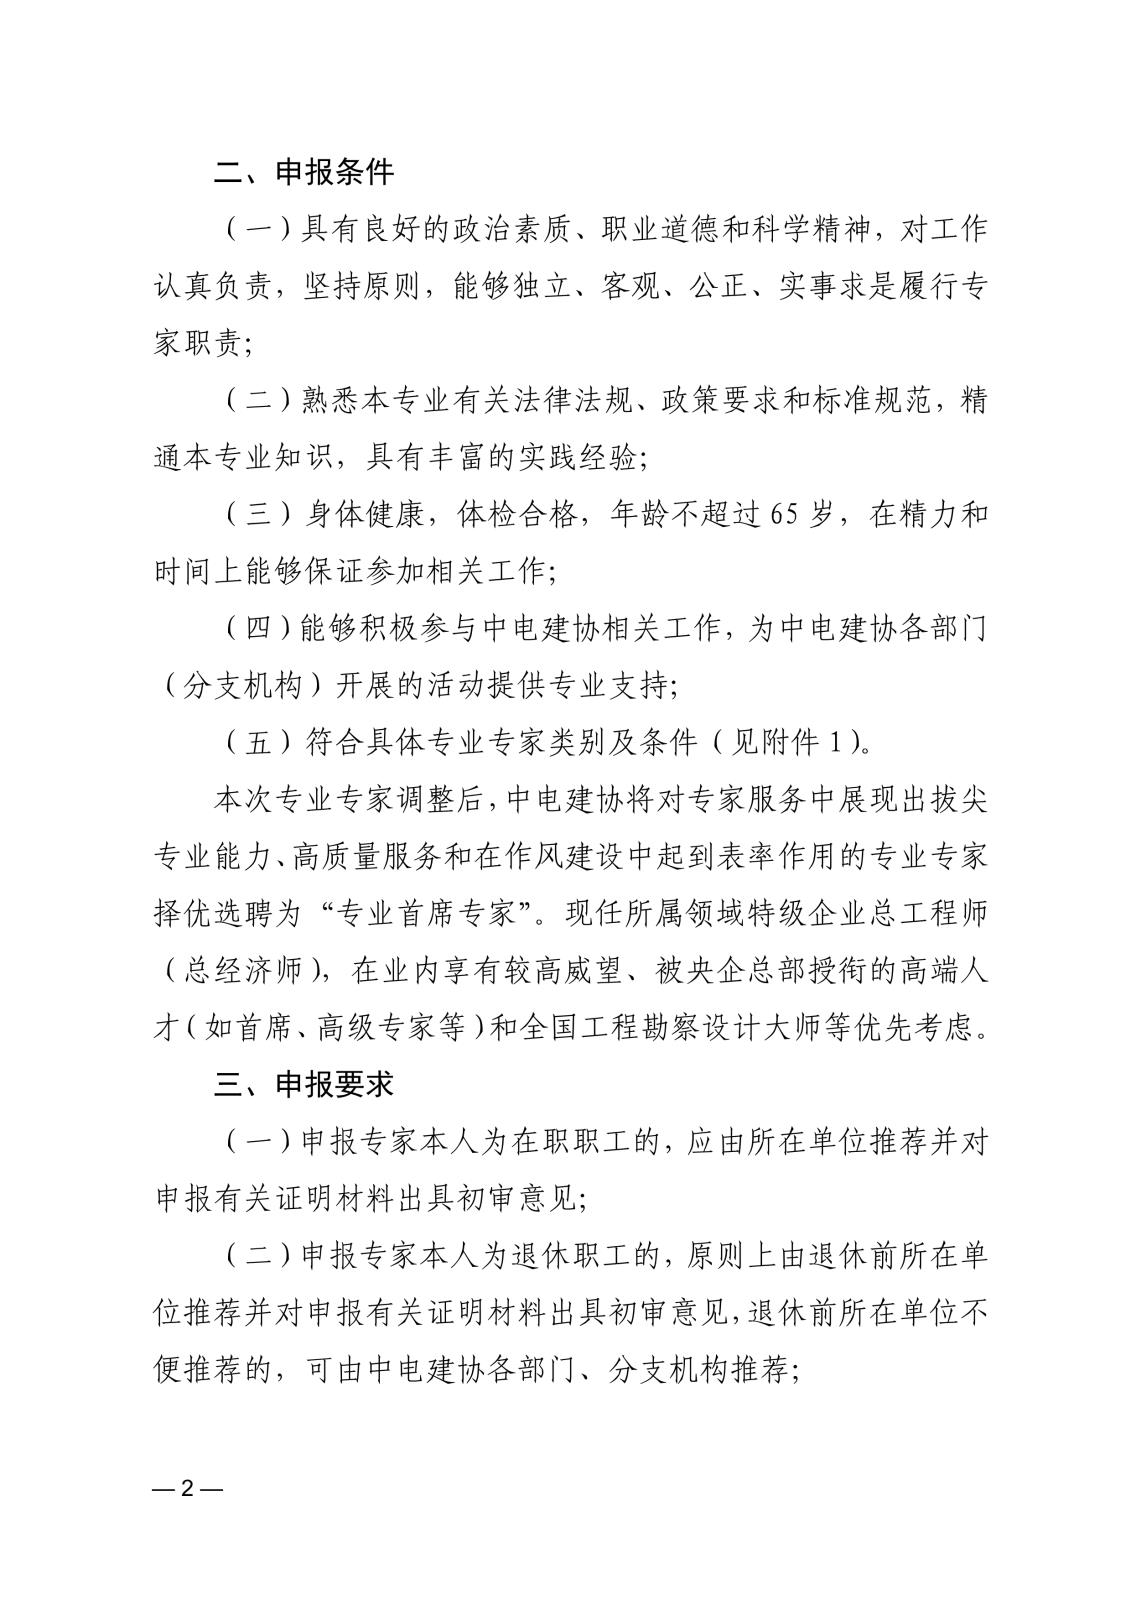 关于申报中国电力建设企业协会专业专家的通知_2.jpg